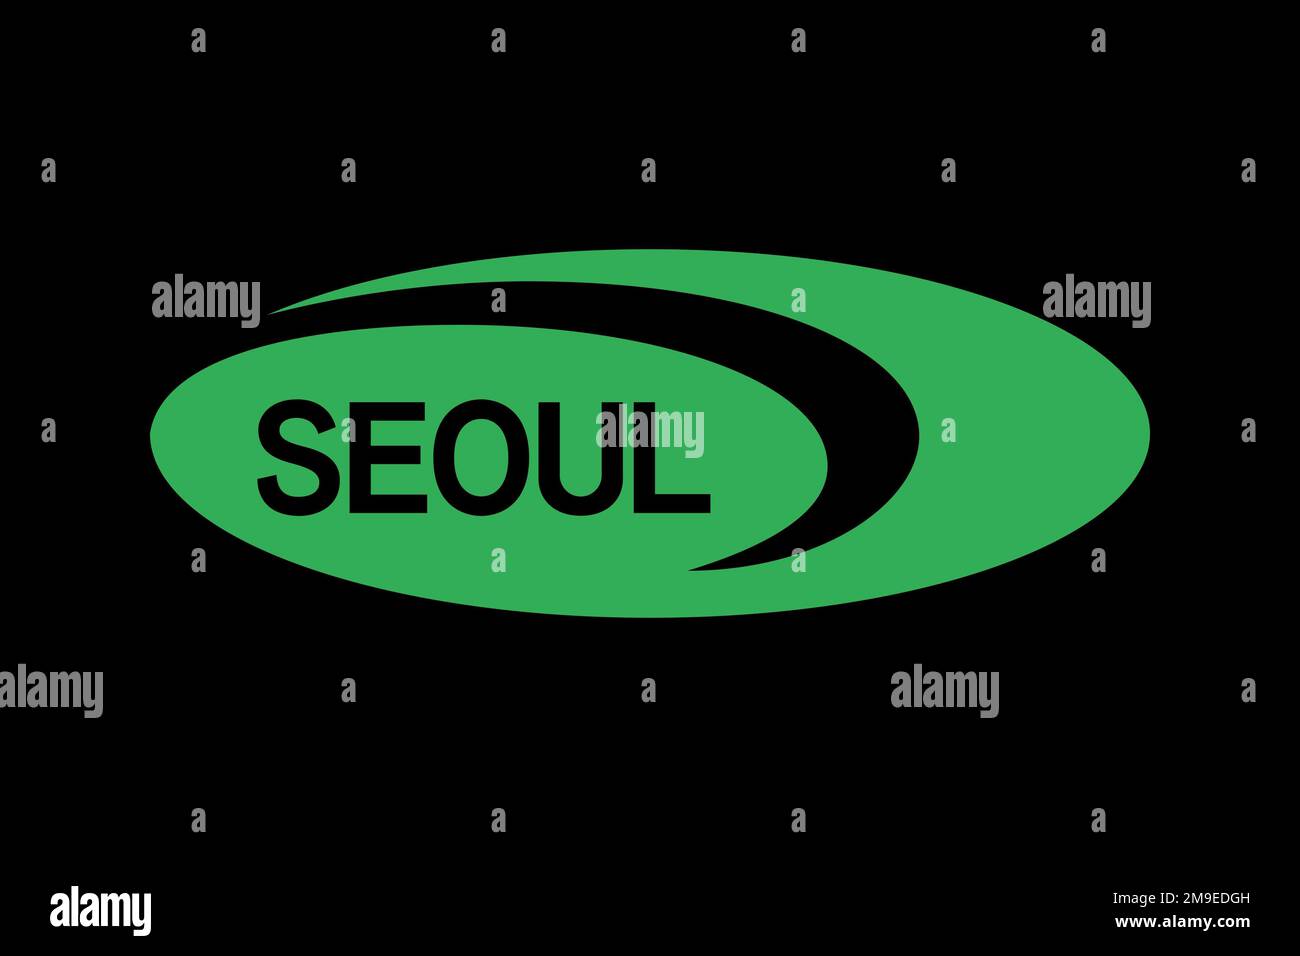 Seoul Semiconductor, Logo, Black background Stock Photo